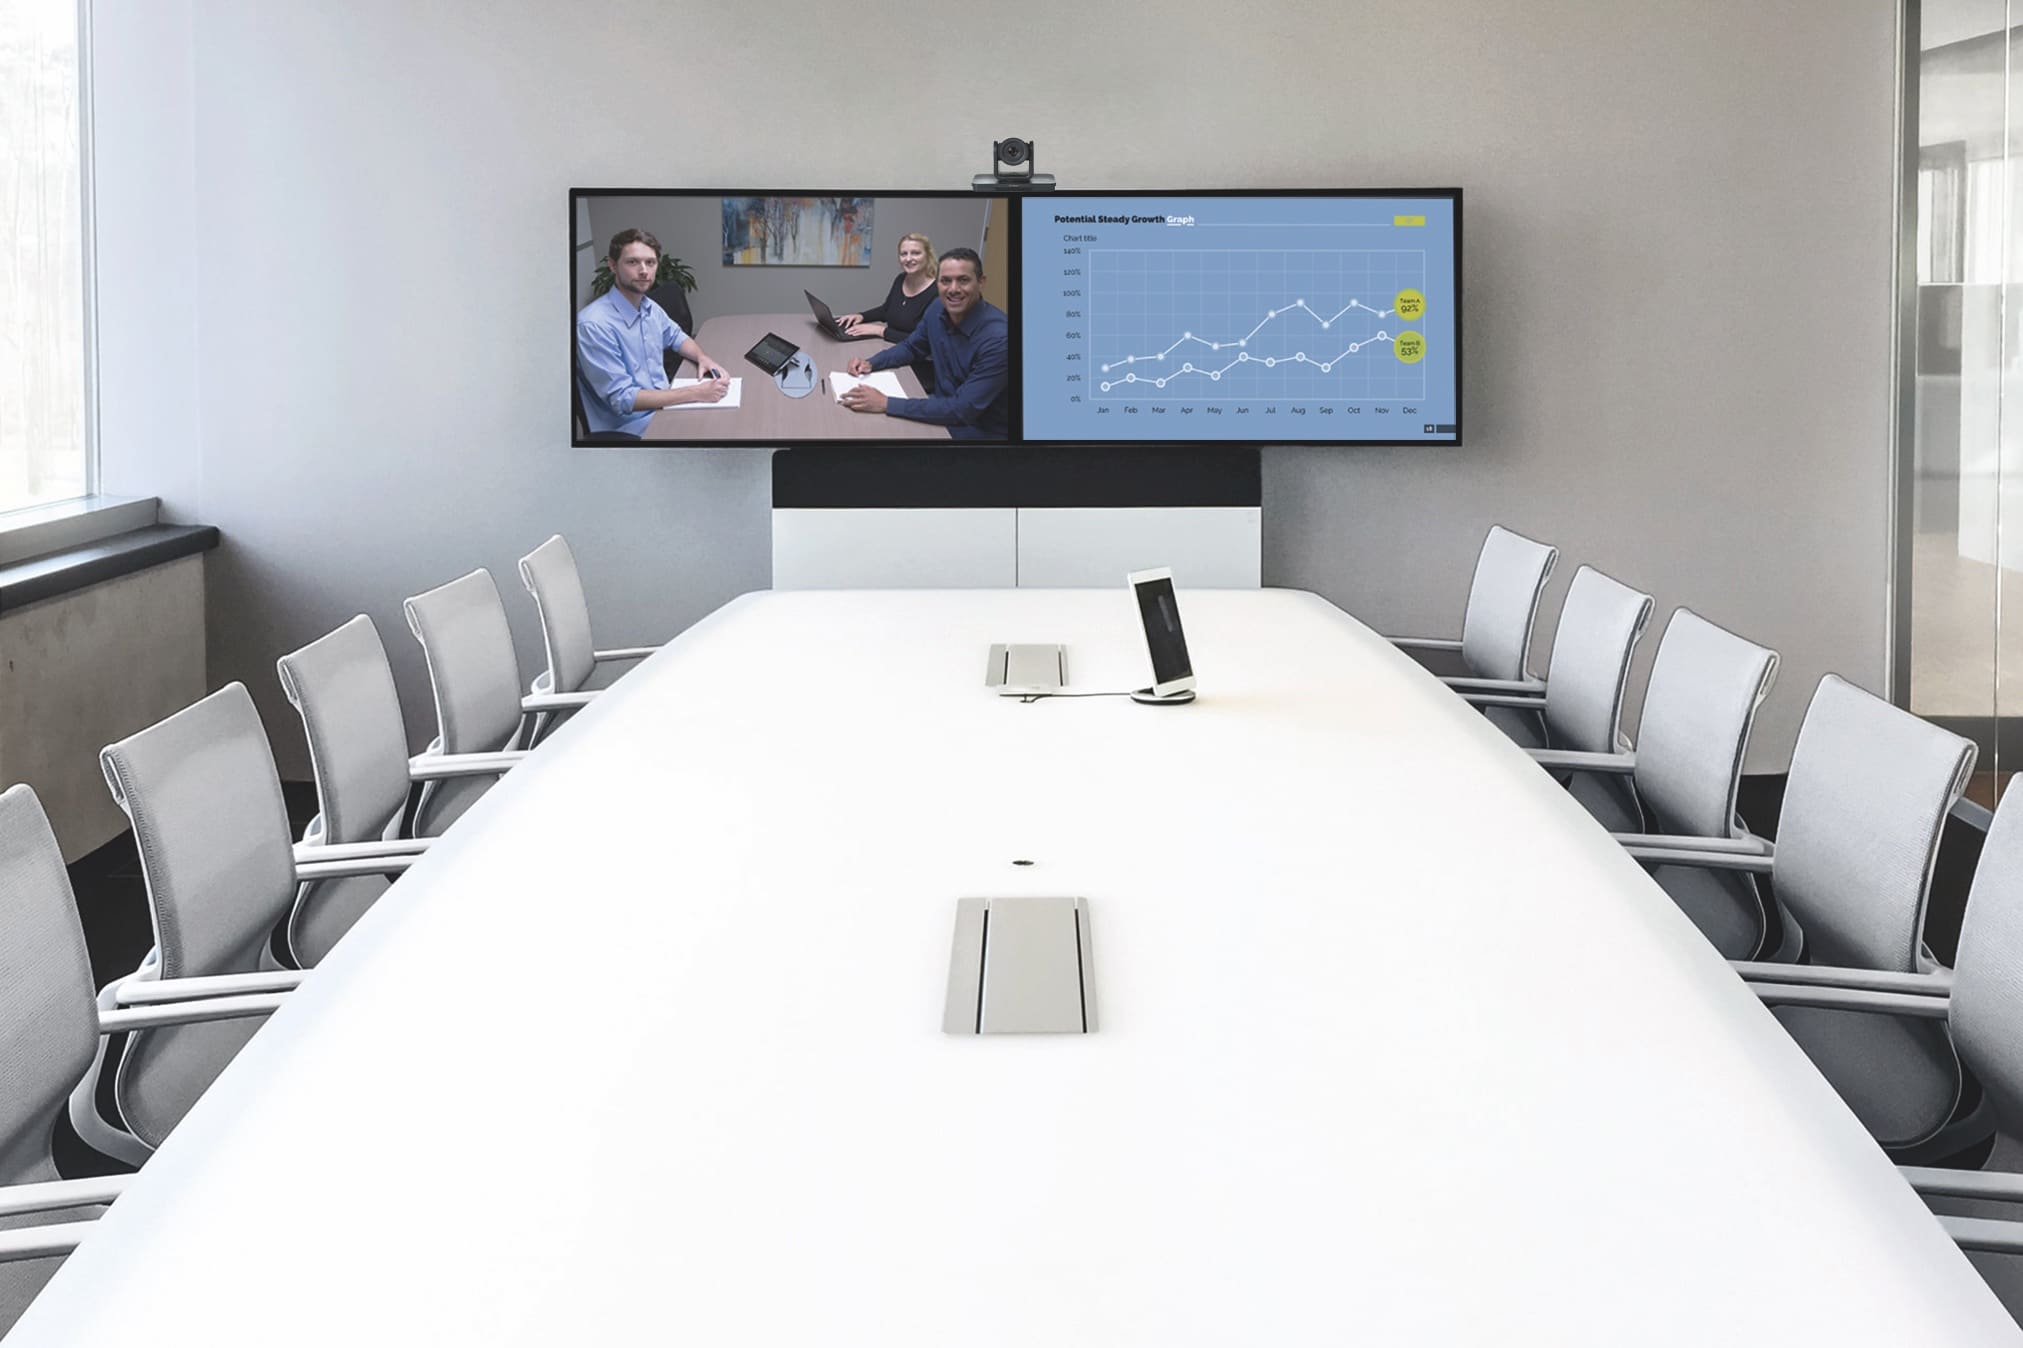 Meeting Room Premium mit Videokonferenz Software und Videokonferenzsystem (zwei Displays, Touch-Controller und Kamera) sowie Medienmöbeln as a Service